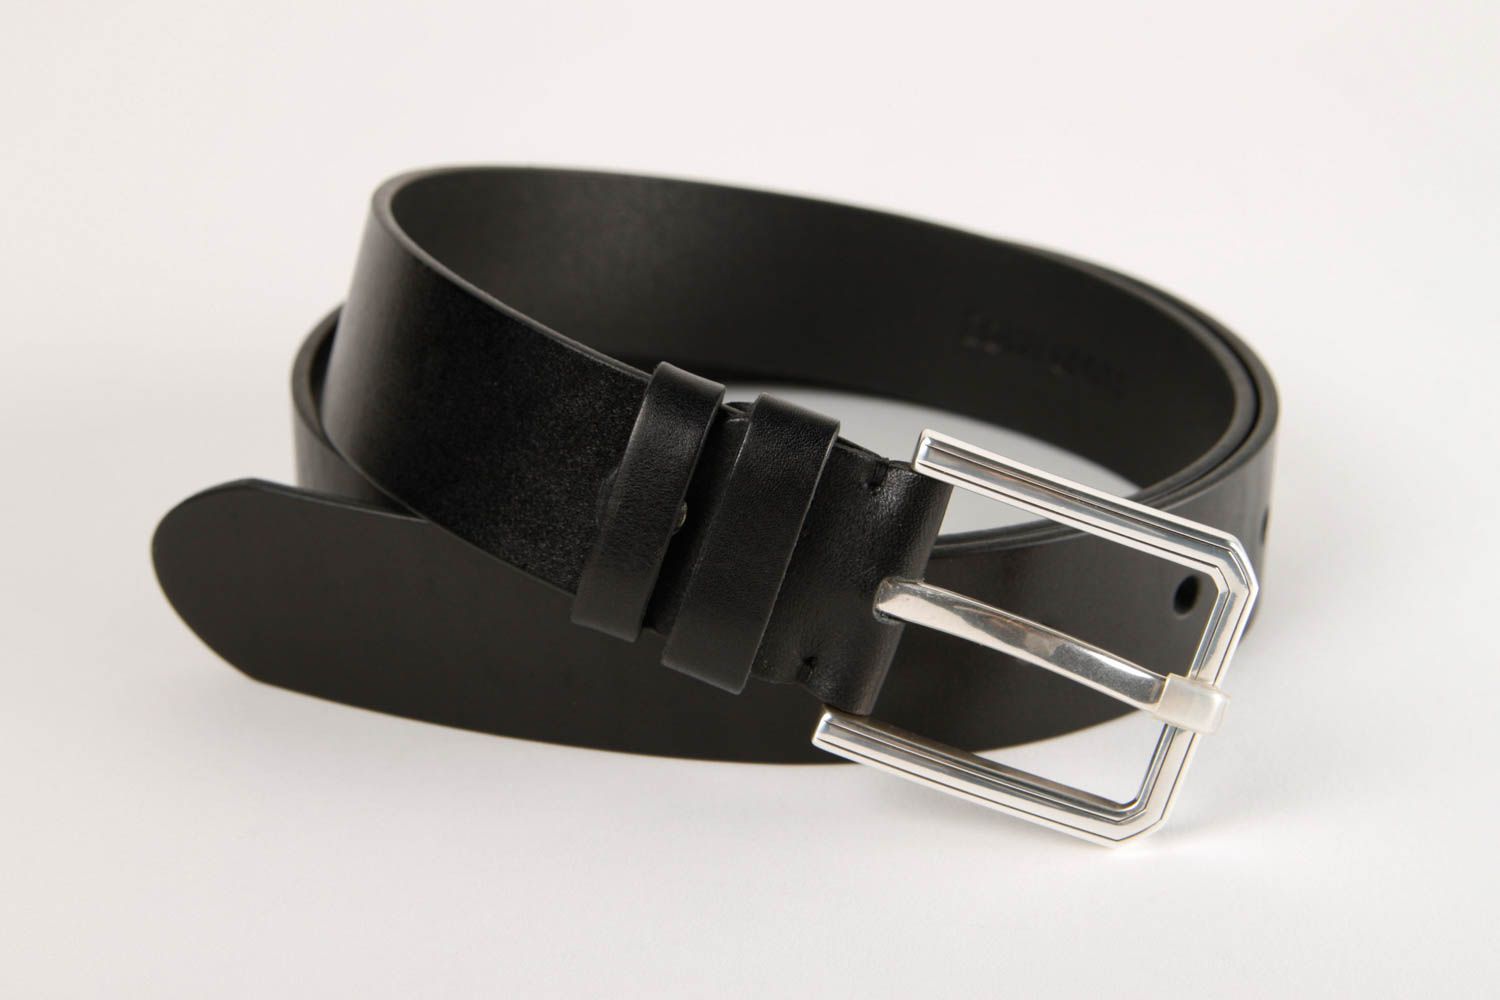 Handmade belt designer belt for men gift ideas leather accessory gift for him photo 3